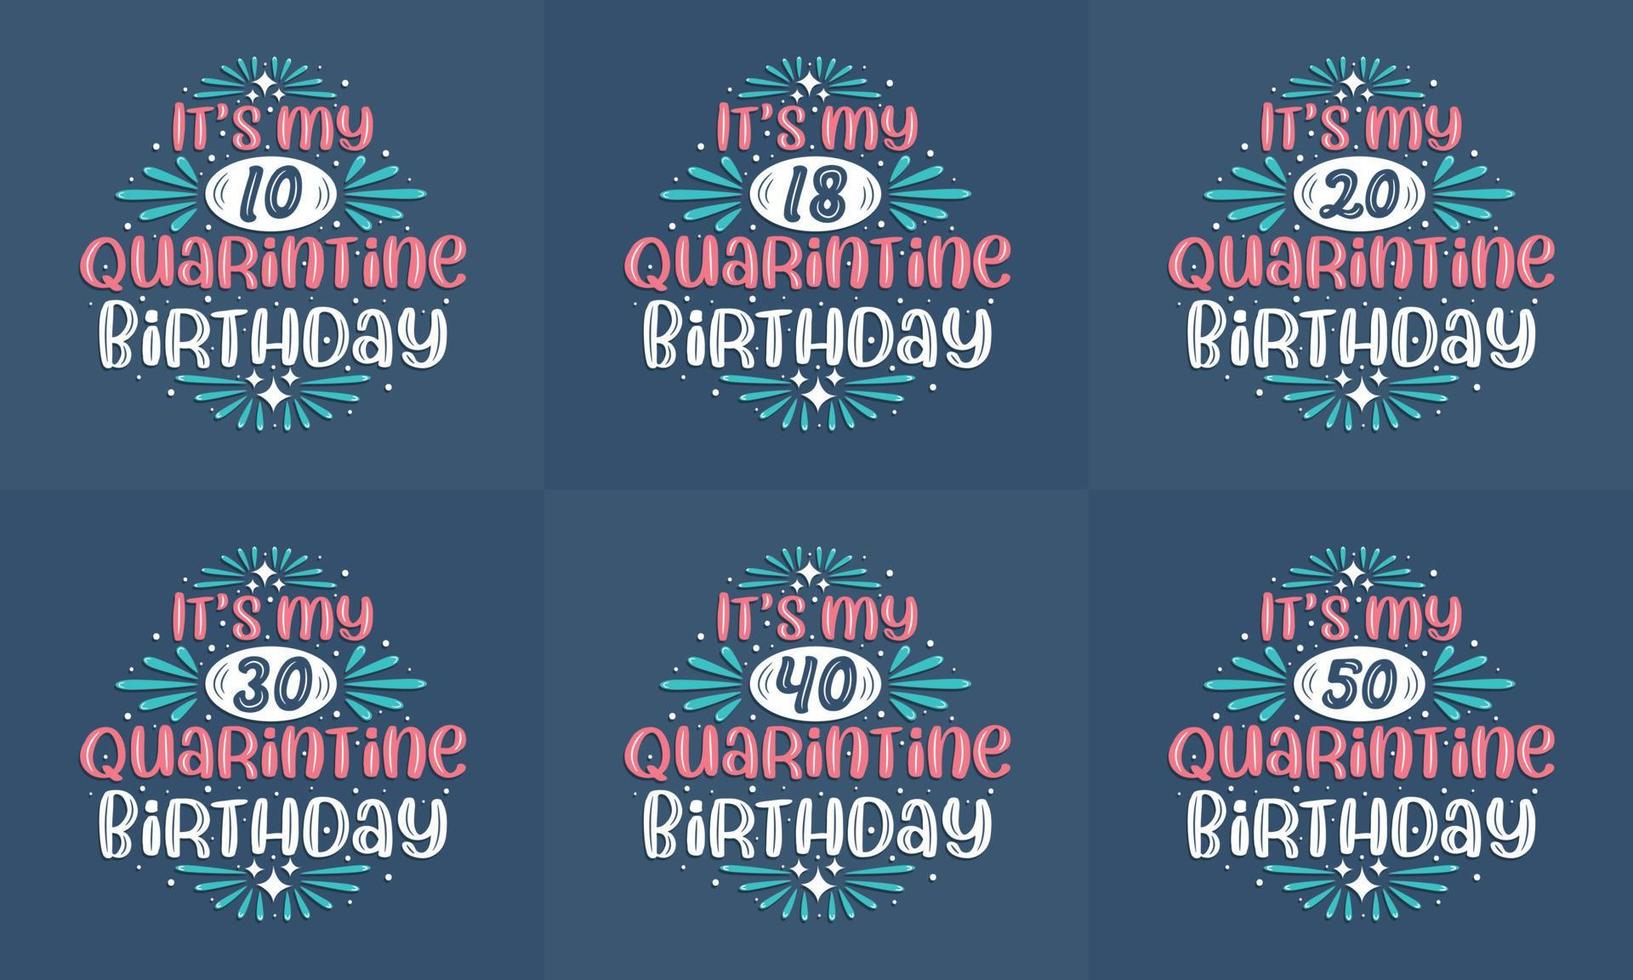 karantän födelsedag design set. karantän födelsedag firande typografi citat design bunt. det är min 10, 18, 20, 30, 40, 50 karantänfödelsedag vektor